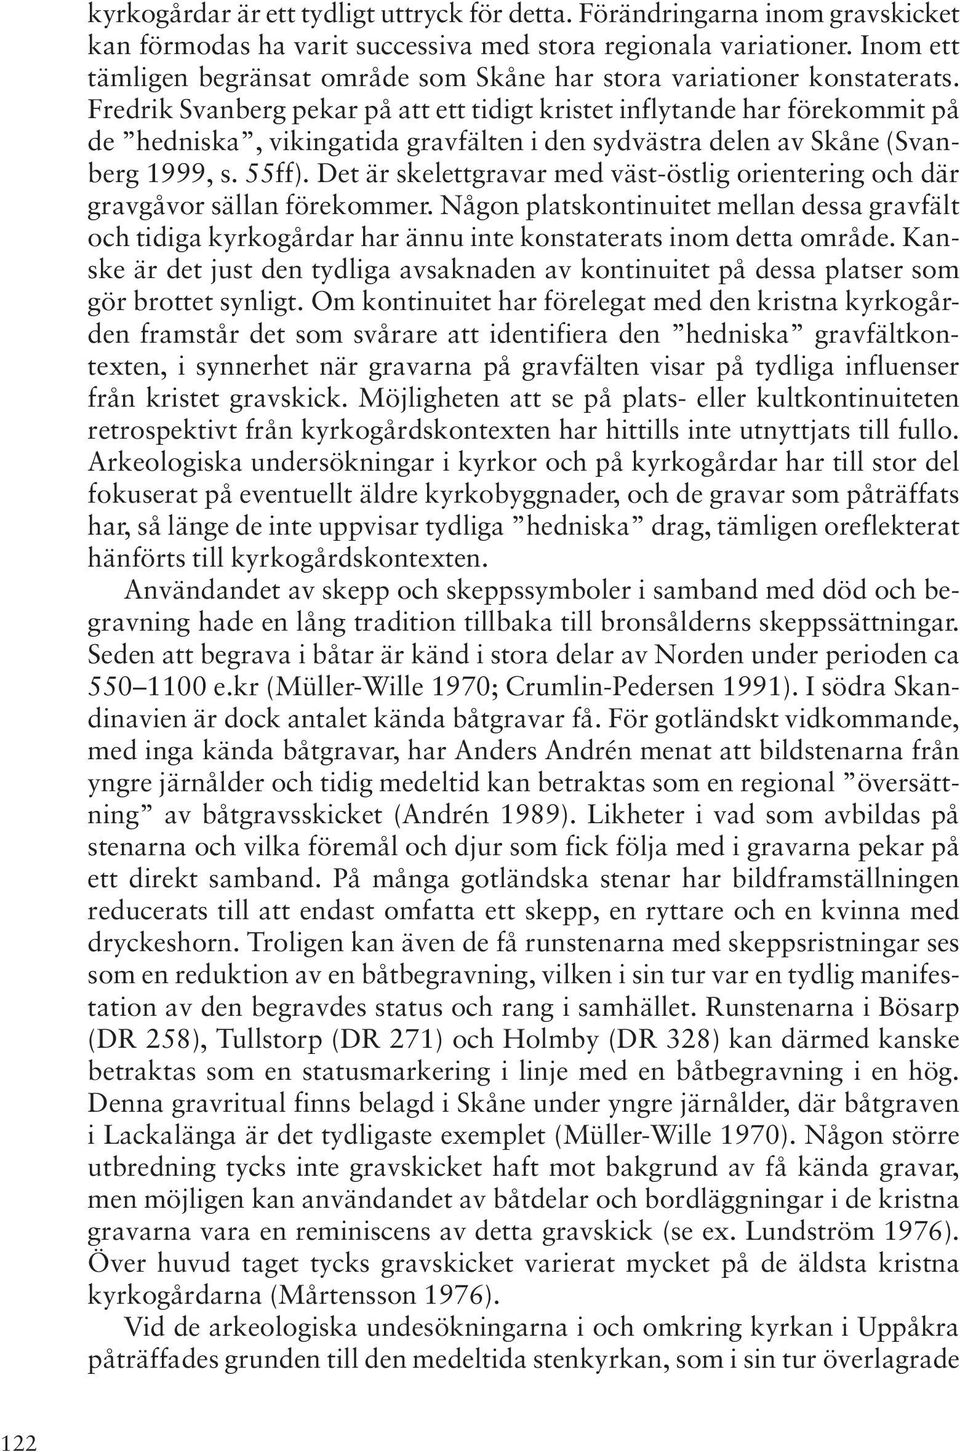 Fredrik Svanberg pekar på att ett tidigt kristet inflytande har förekommit på de hedniska, vikingatida gravfälten i den sydvästra delen av Skåne (Svanberg 1999, s. 55ff).